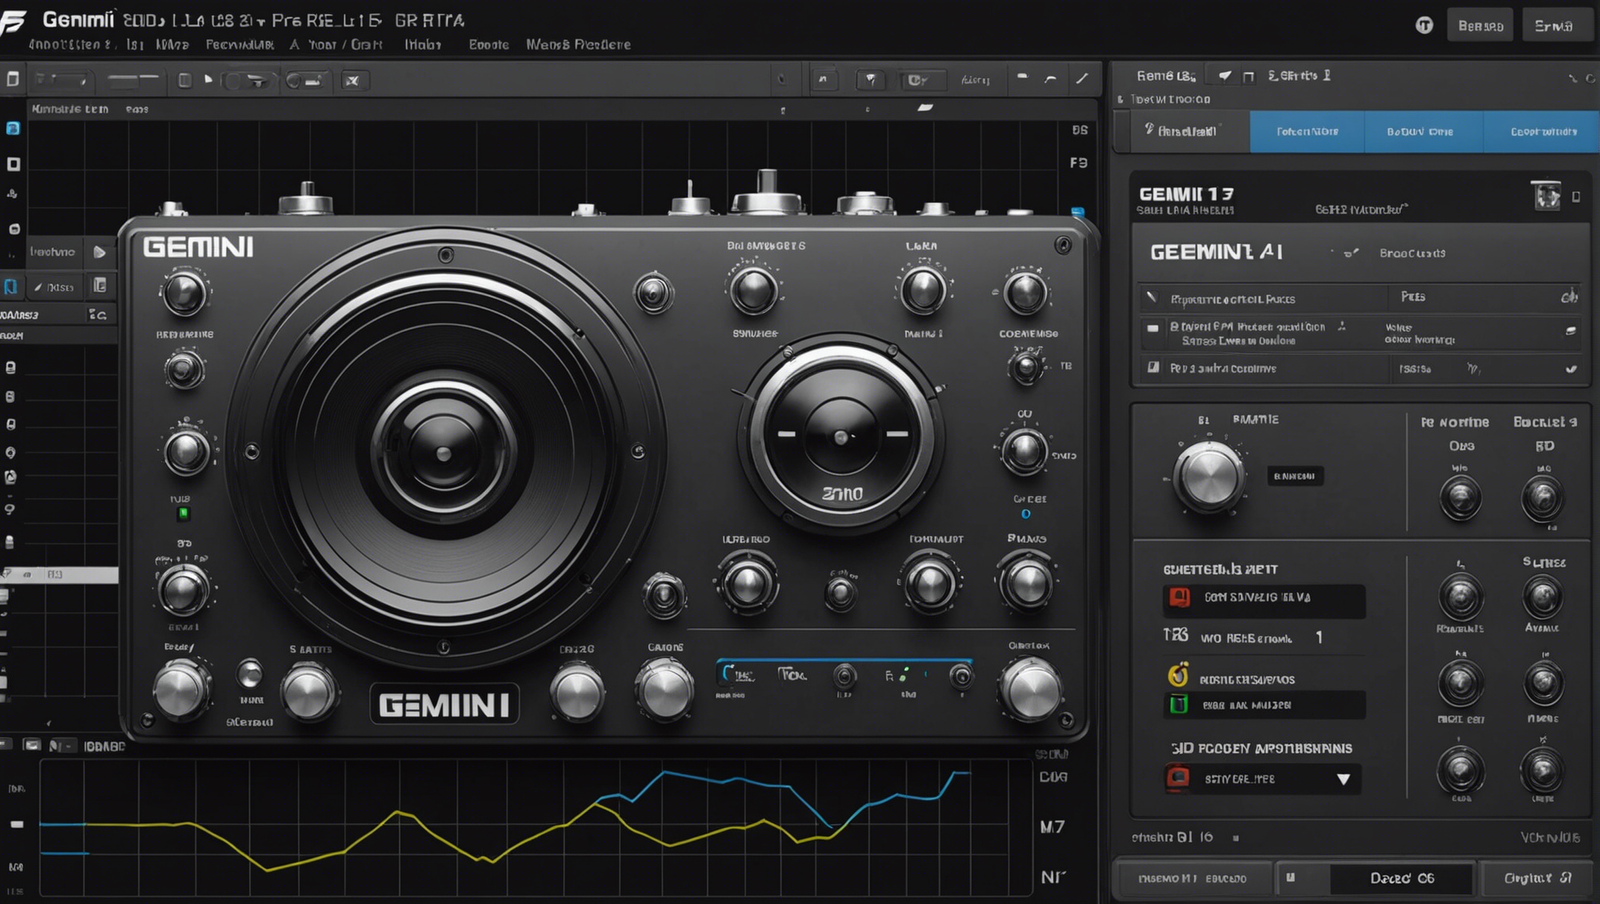 découvrez la révolution du son avec gemini 1.5 pro et sa nouvelle fonctionnalité audio incroyable.